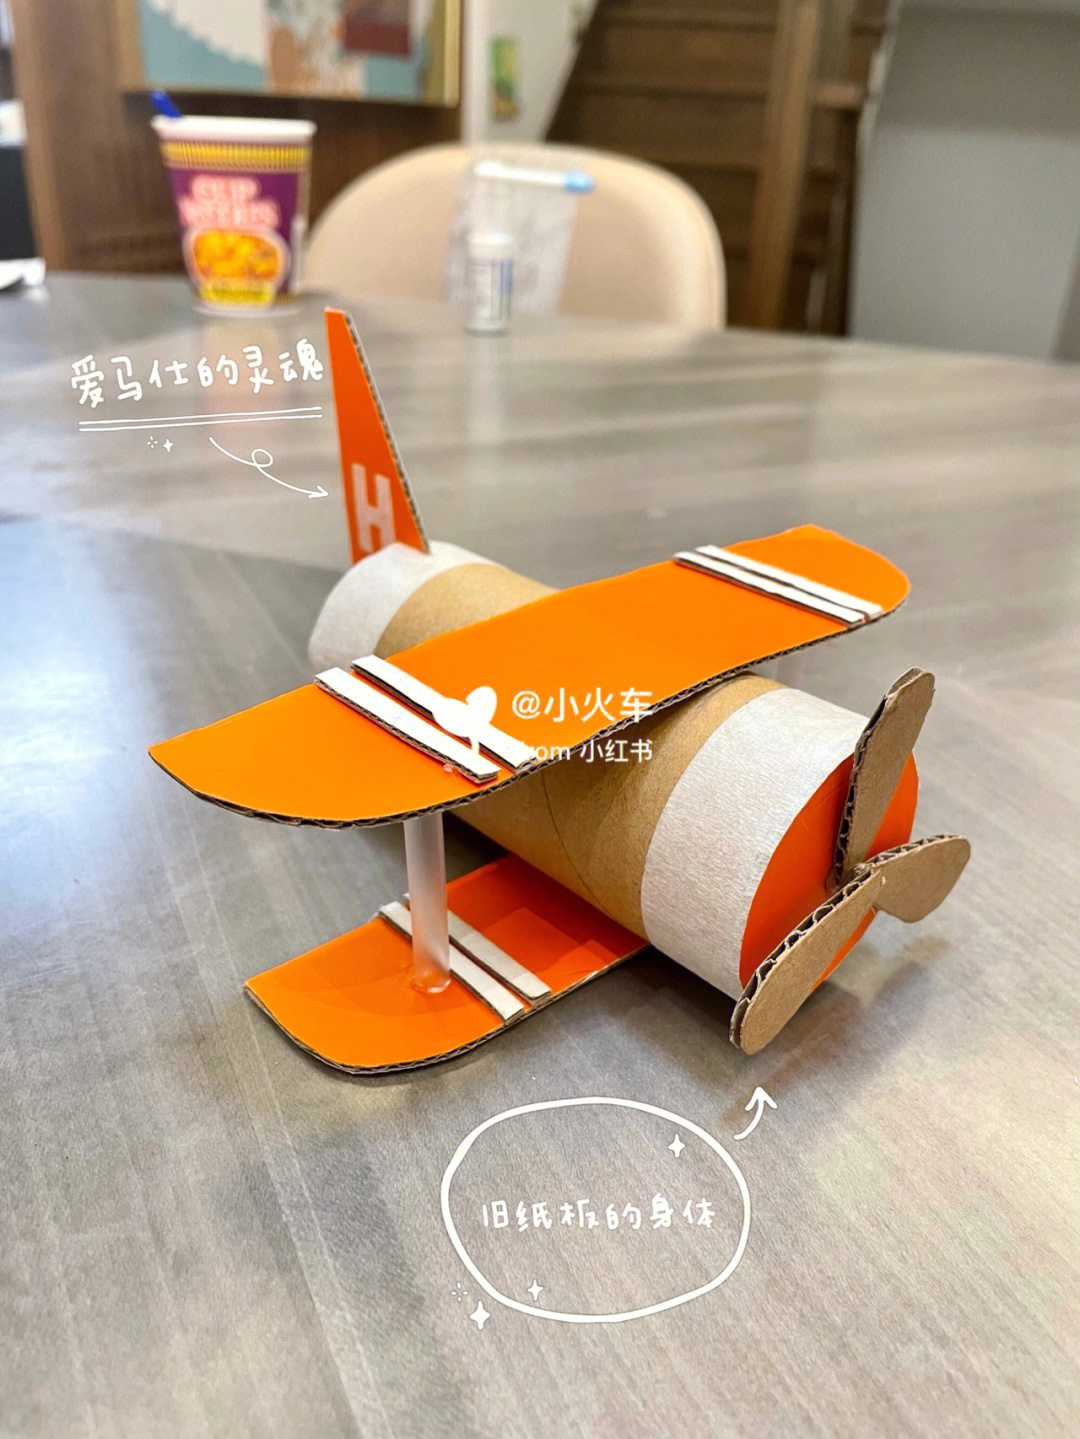 硬纸板做飞机的步骤图图片